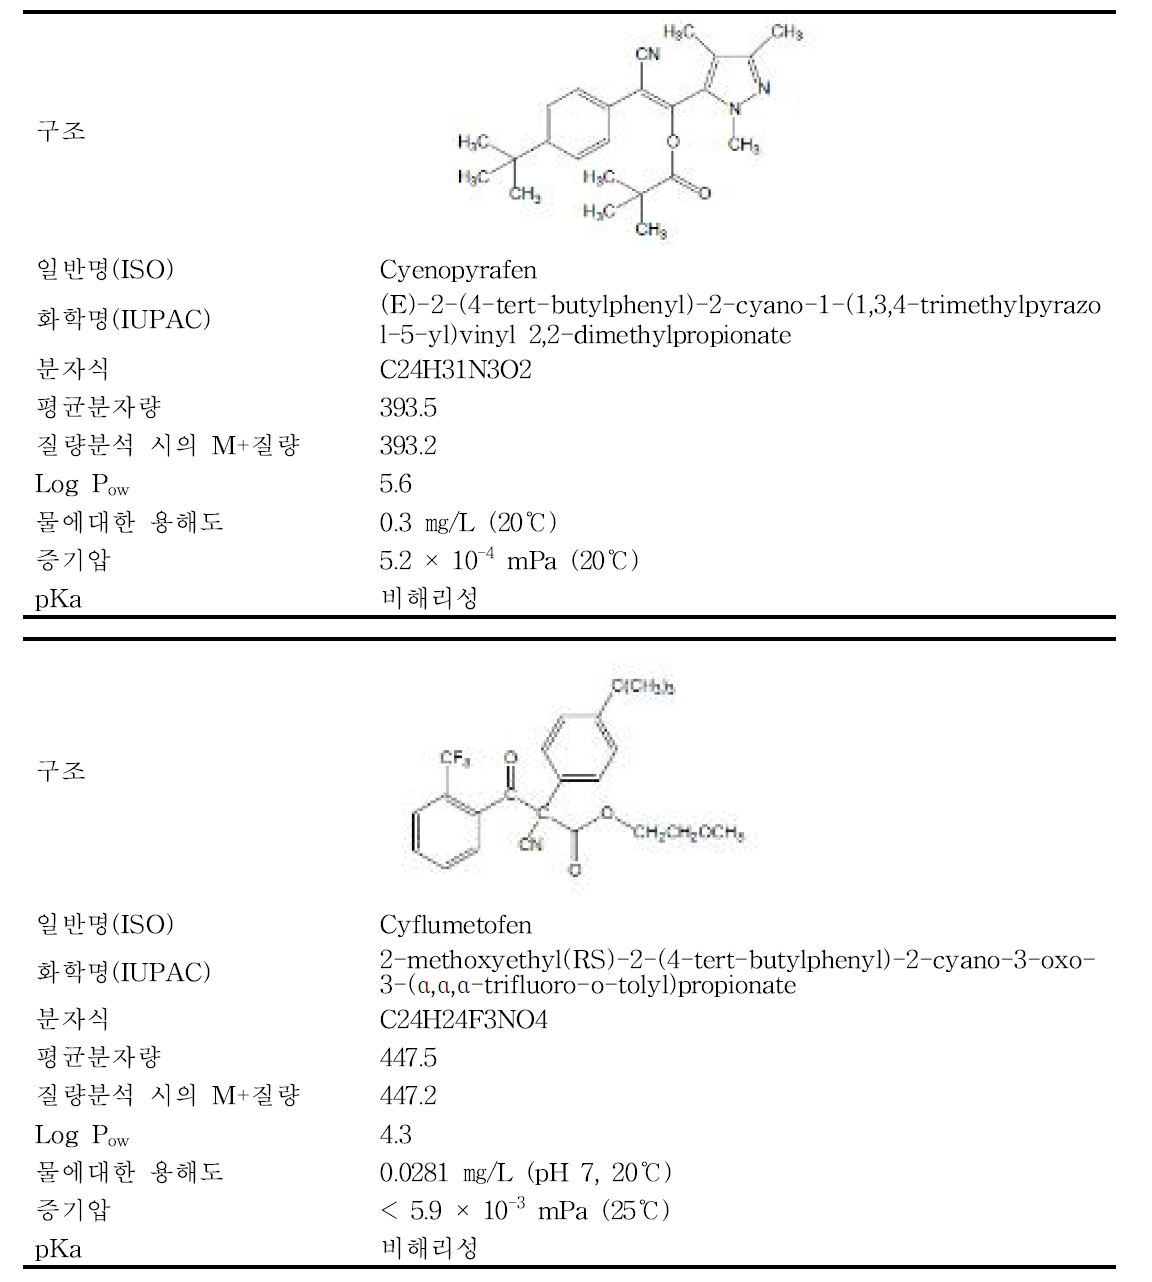 cyenopyrafen’과 ‘cyflumetofen’의 물리화학적 특성